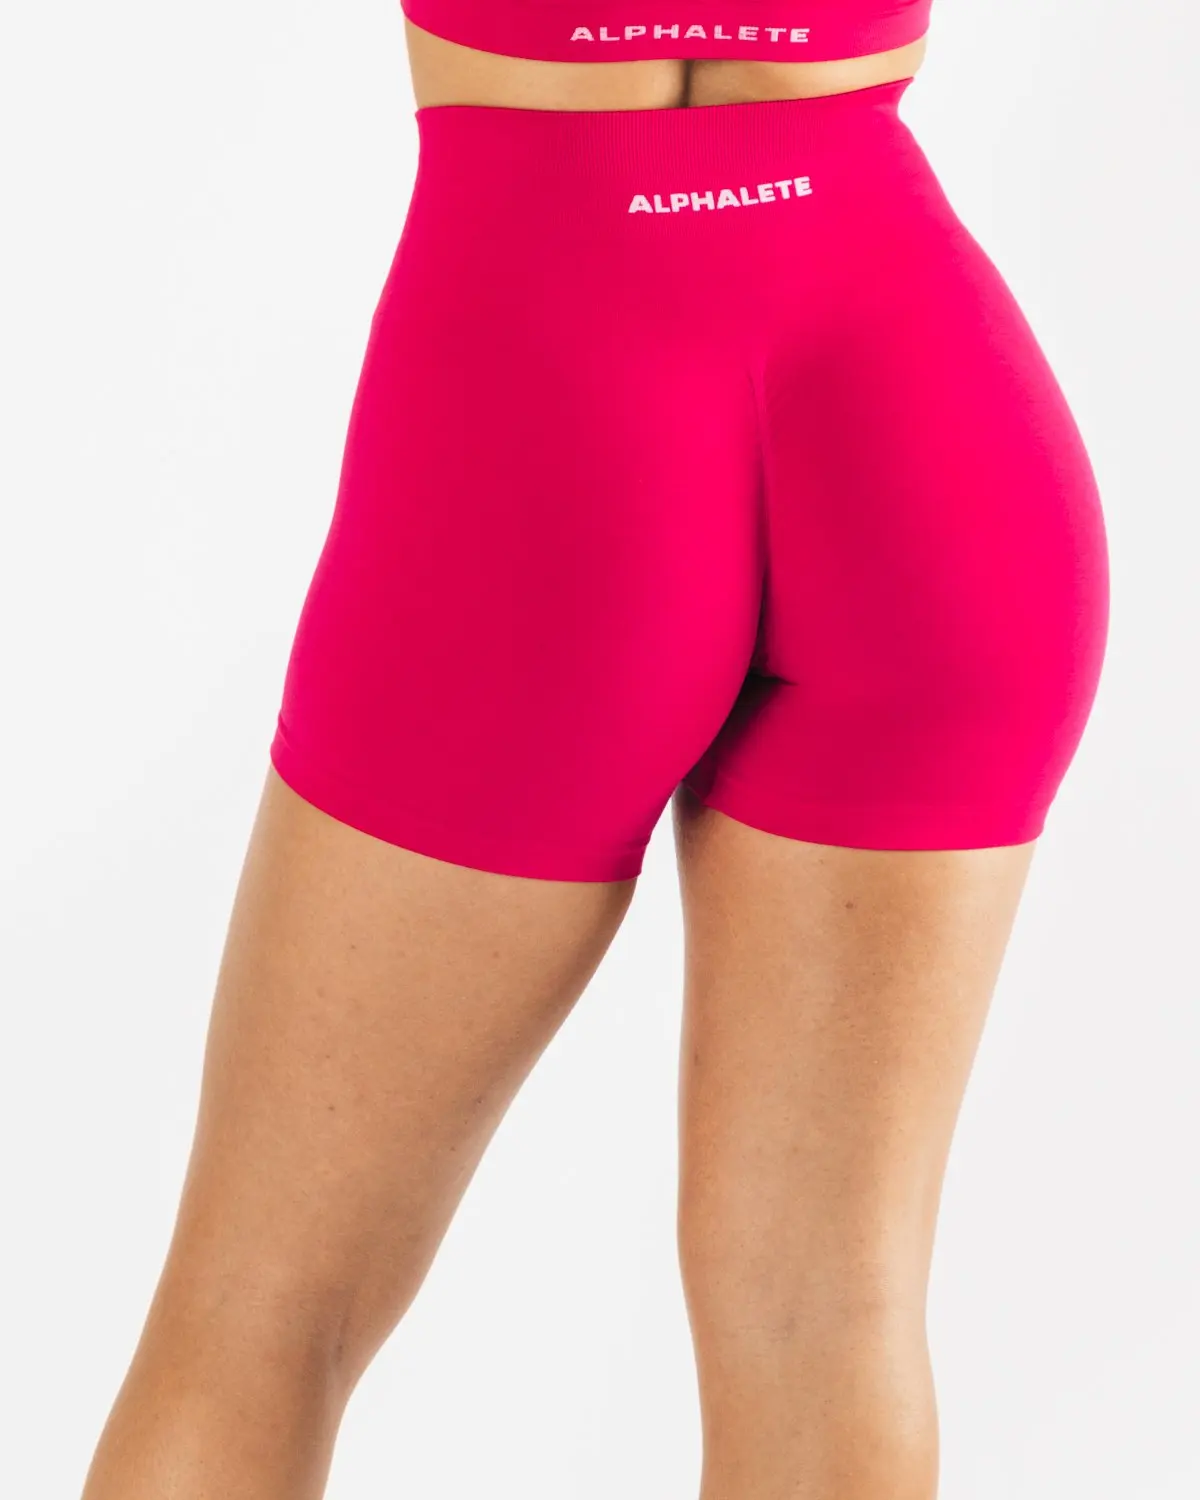 aurola gym shorts